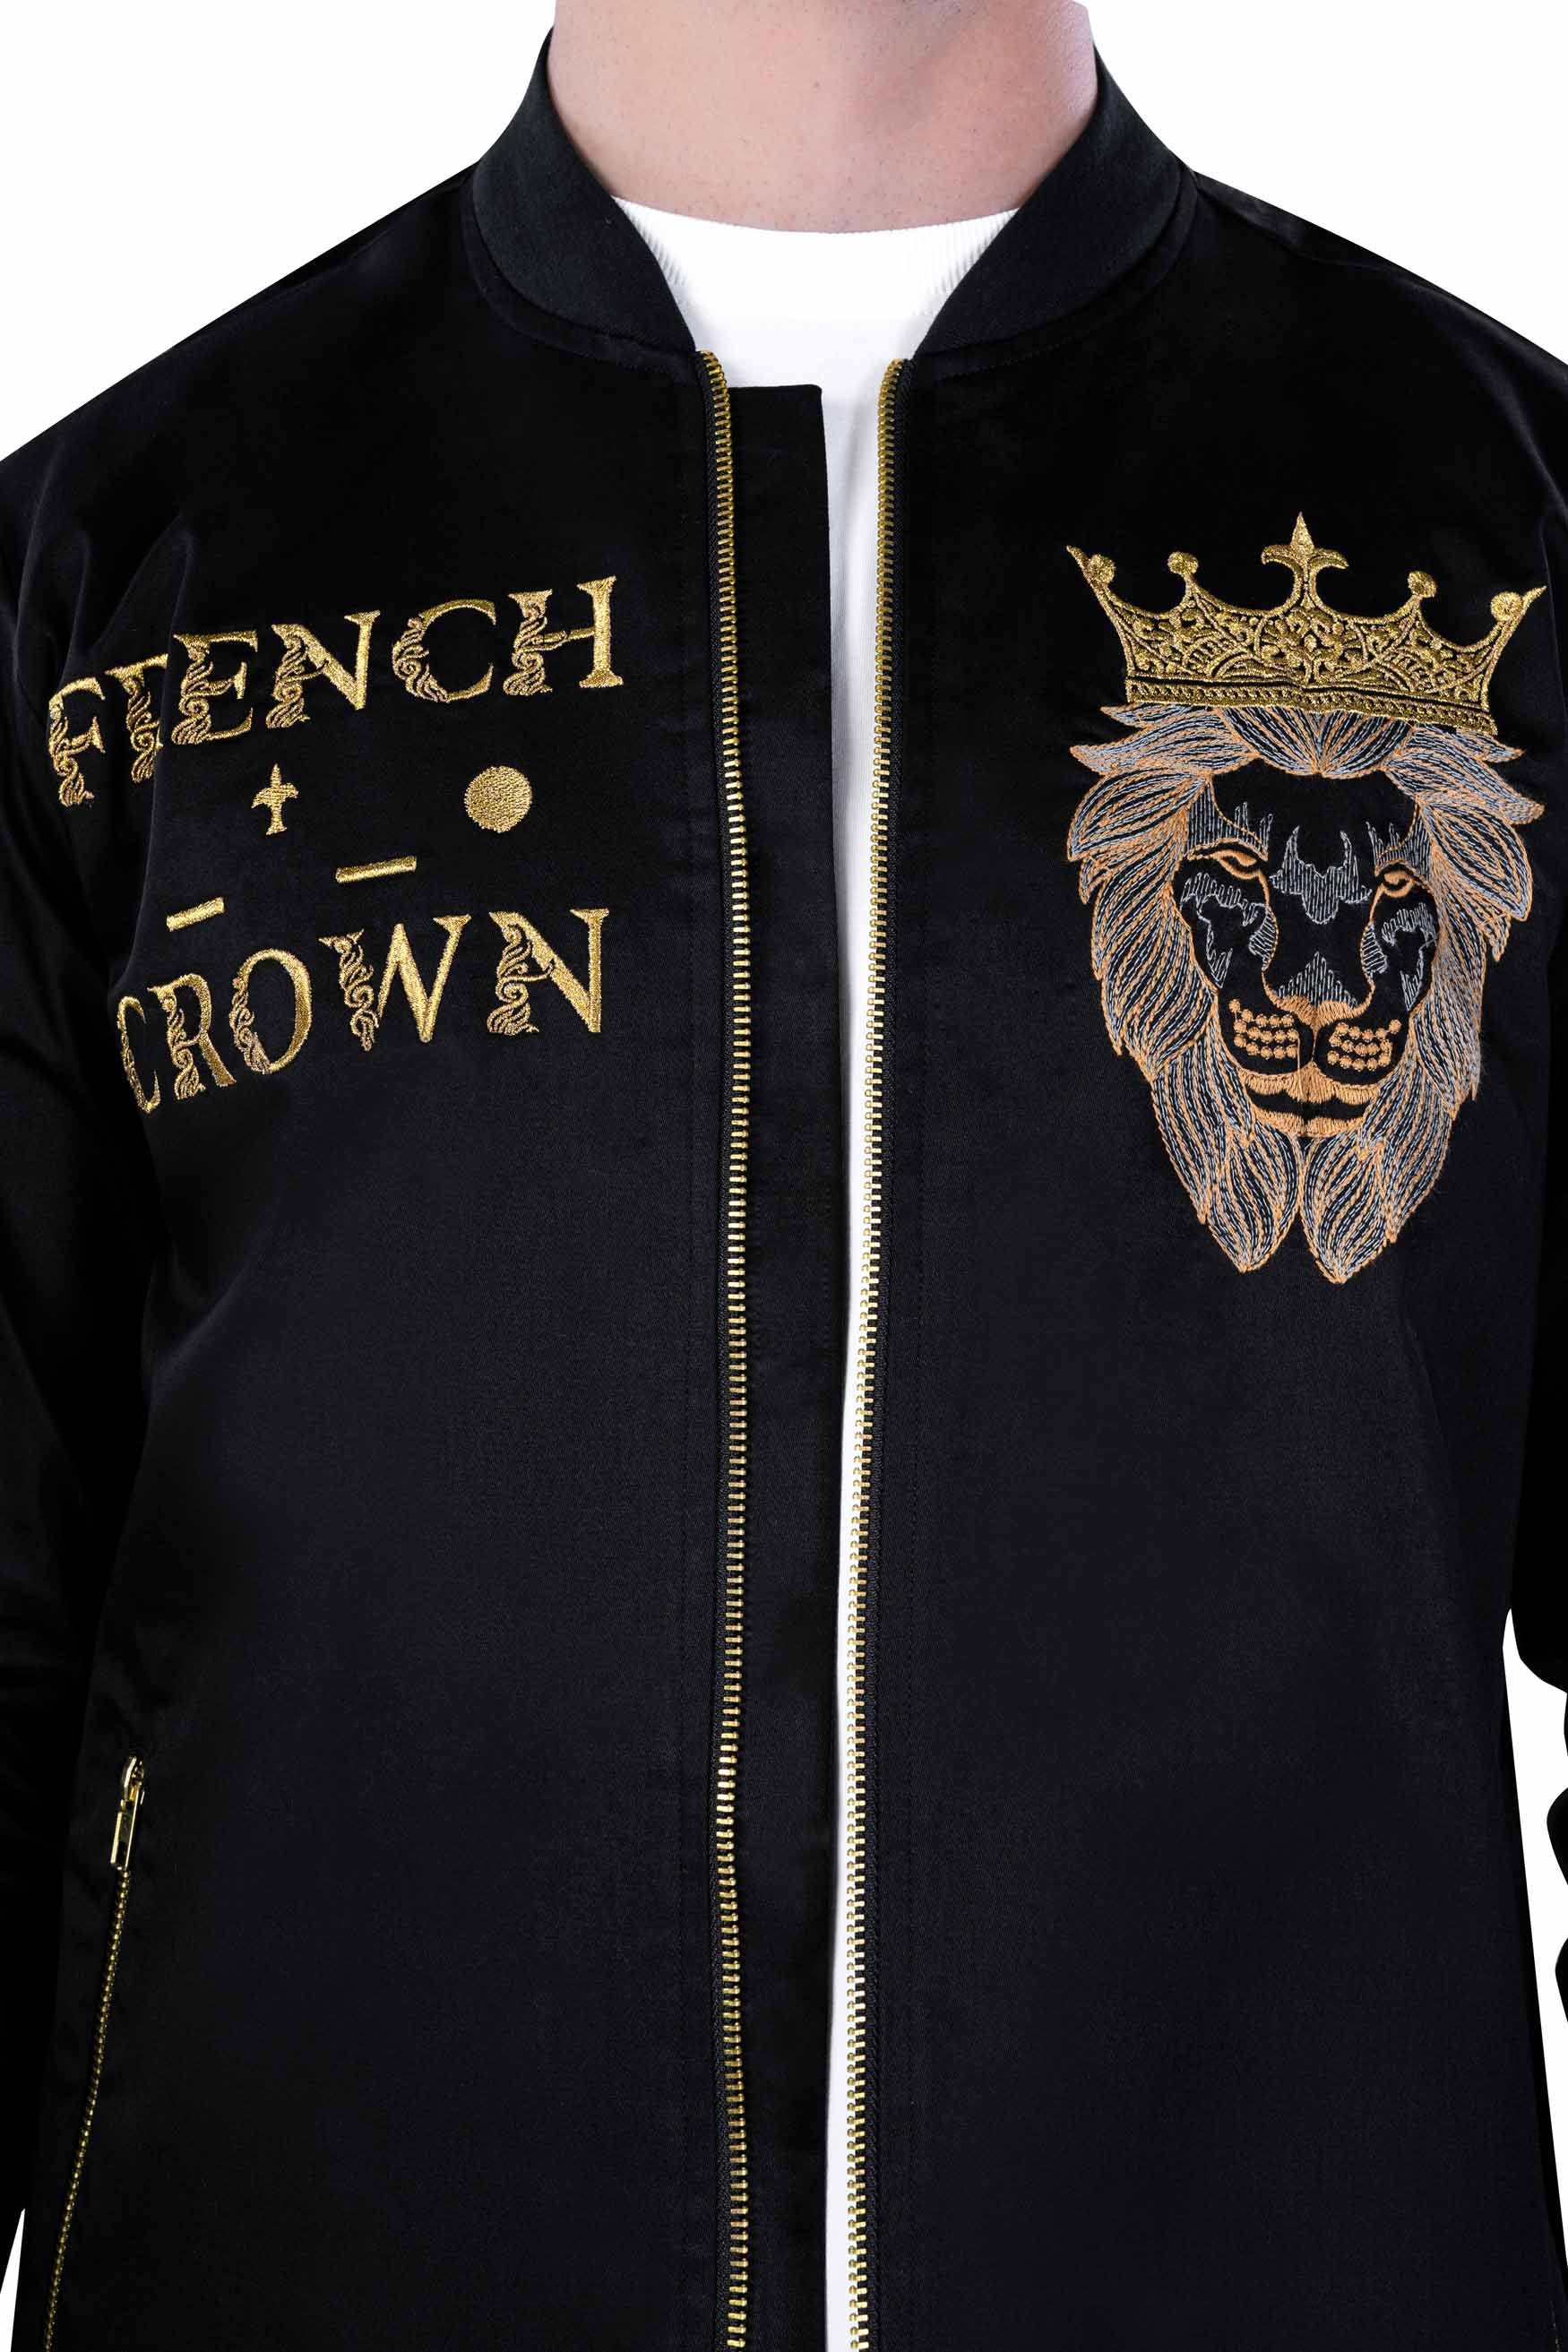 Jade Black Crowned Lion Embroidered Premium Cotton Bomber Designer Jacket